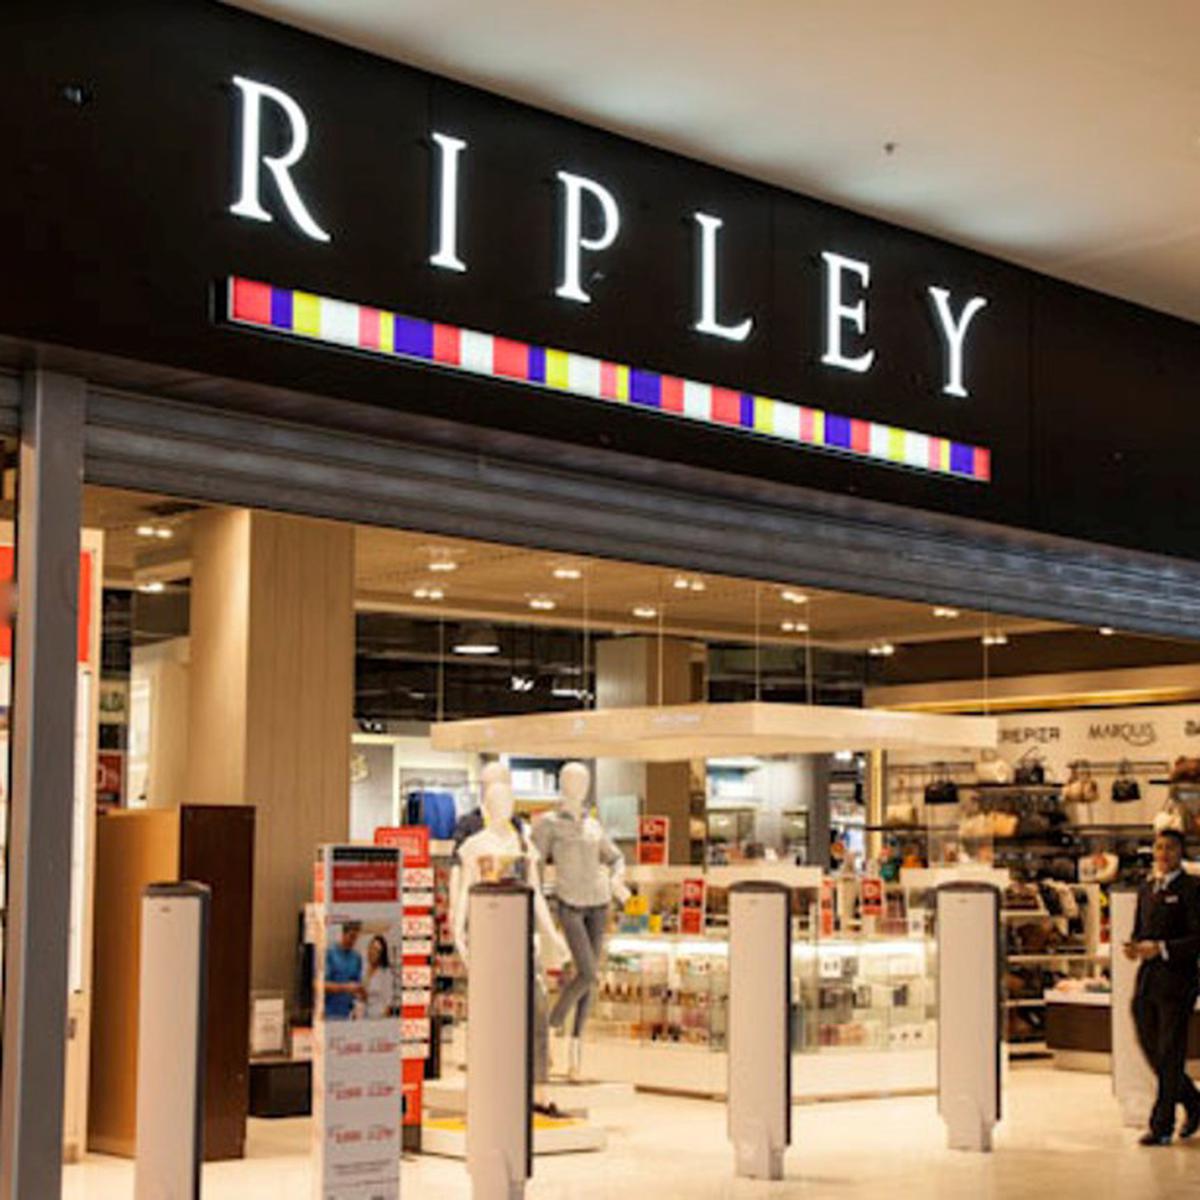 Utilidades de Ripley aumentan 44% y ventas en canal digital suben 33%